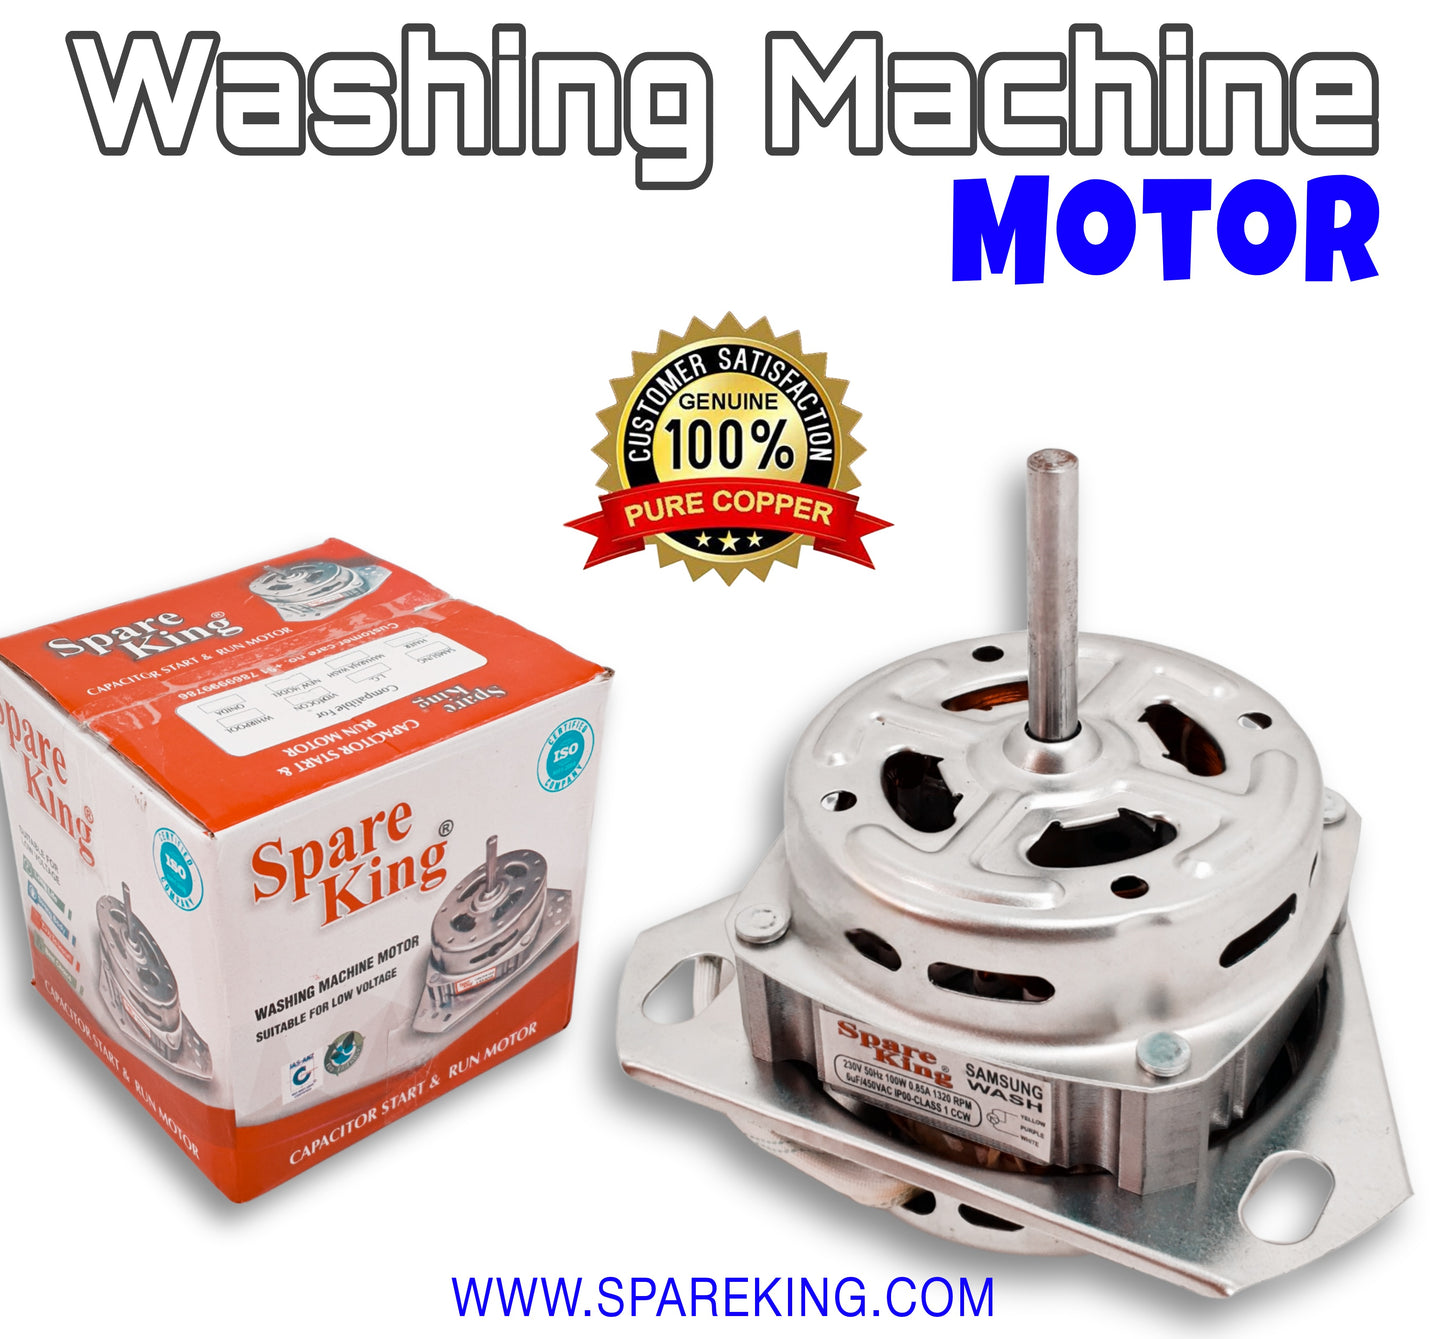 Spin (Dry) Motor - Washing Machine